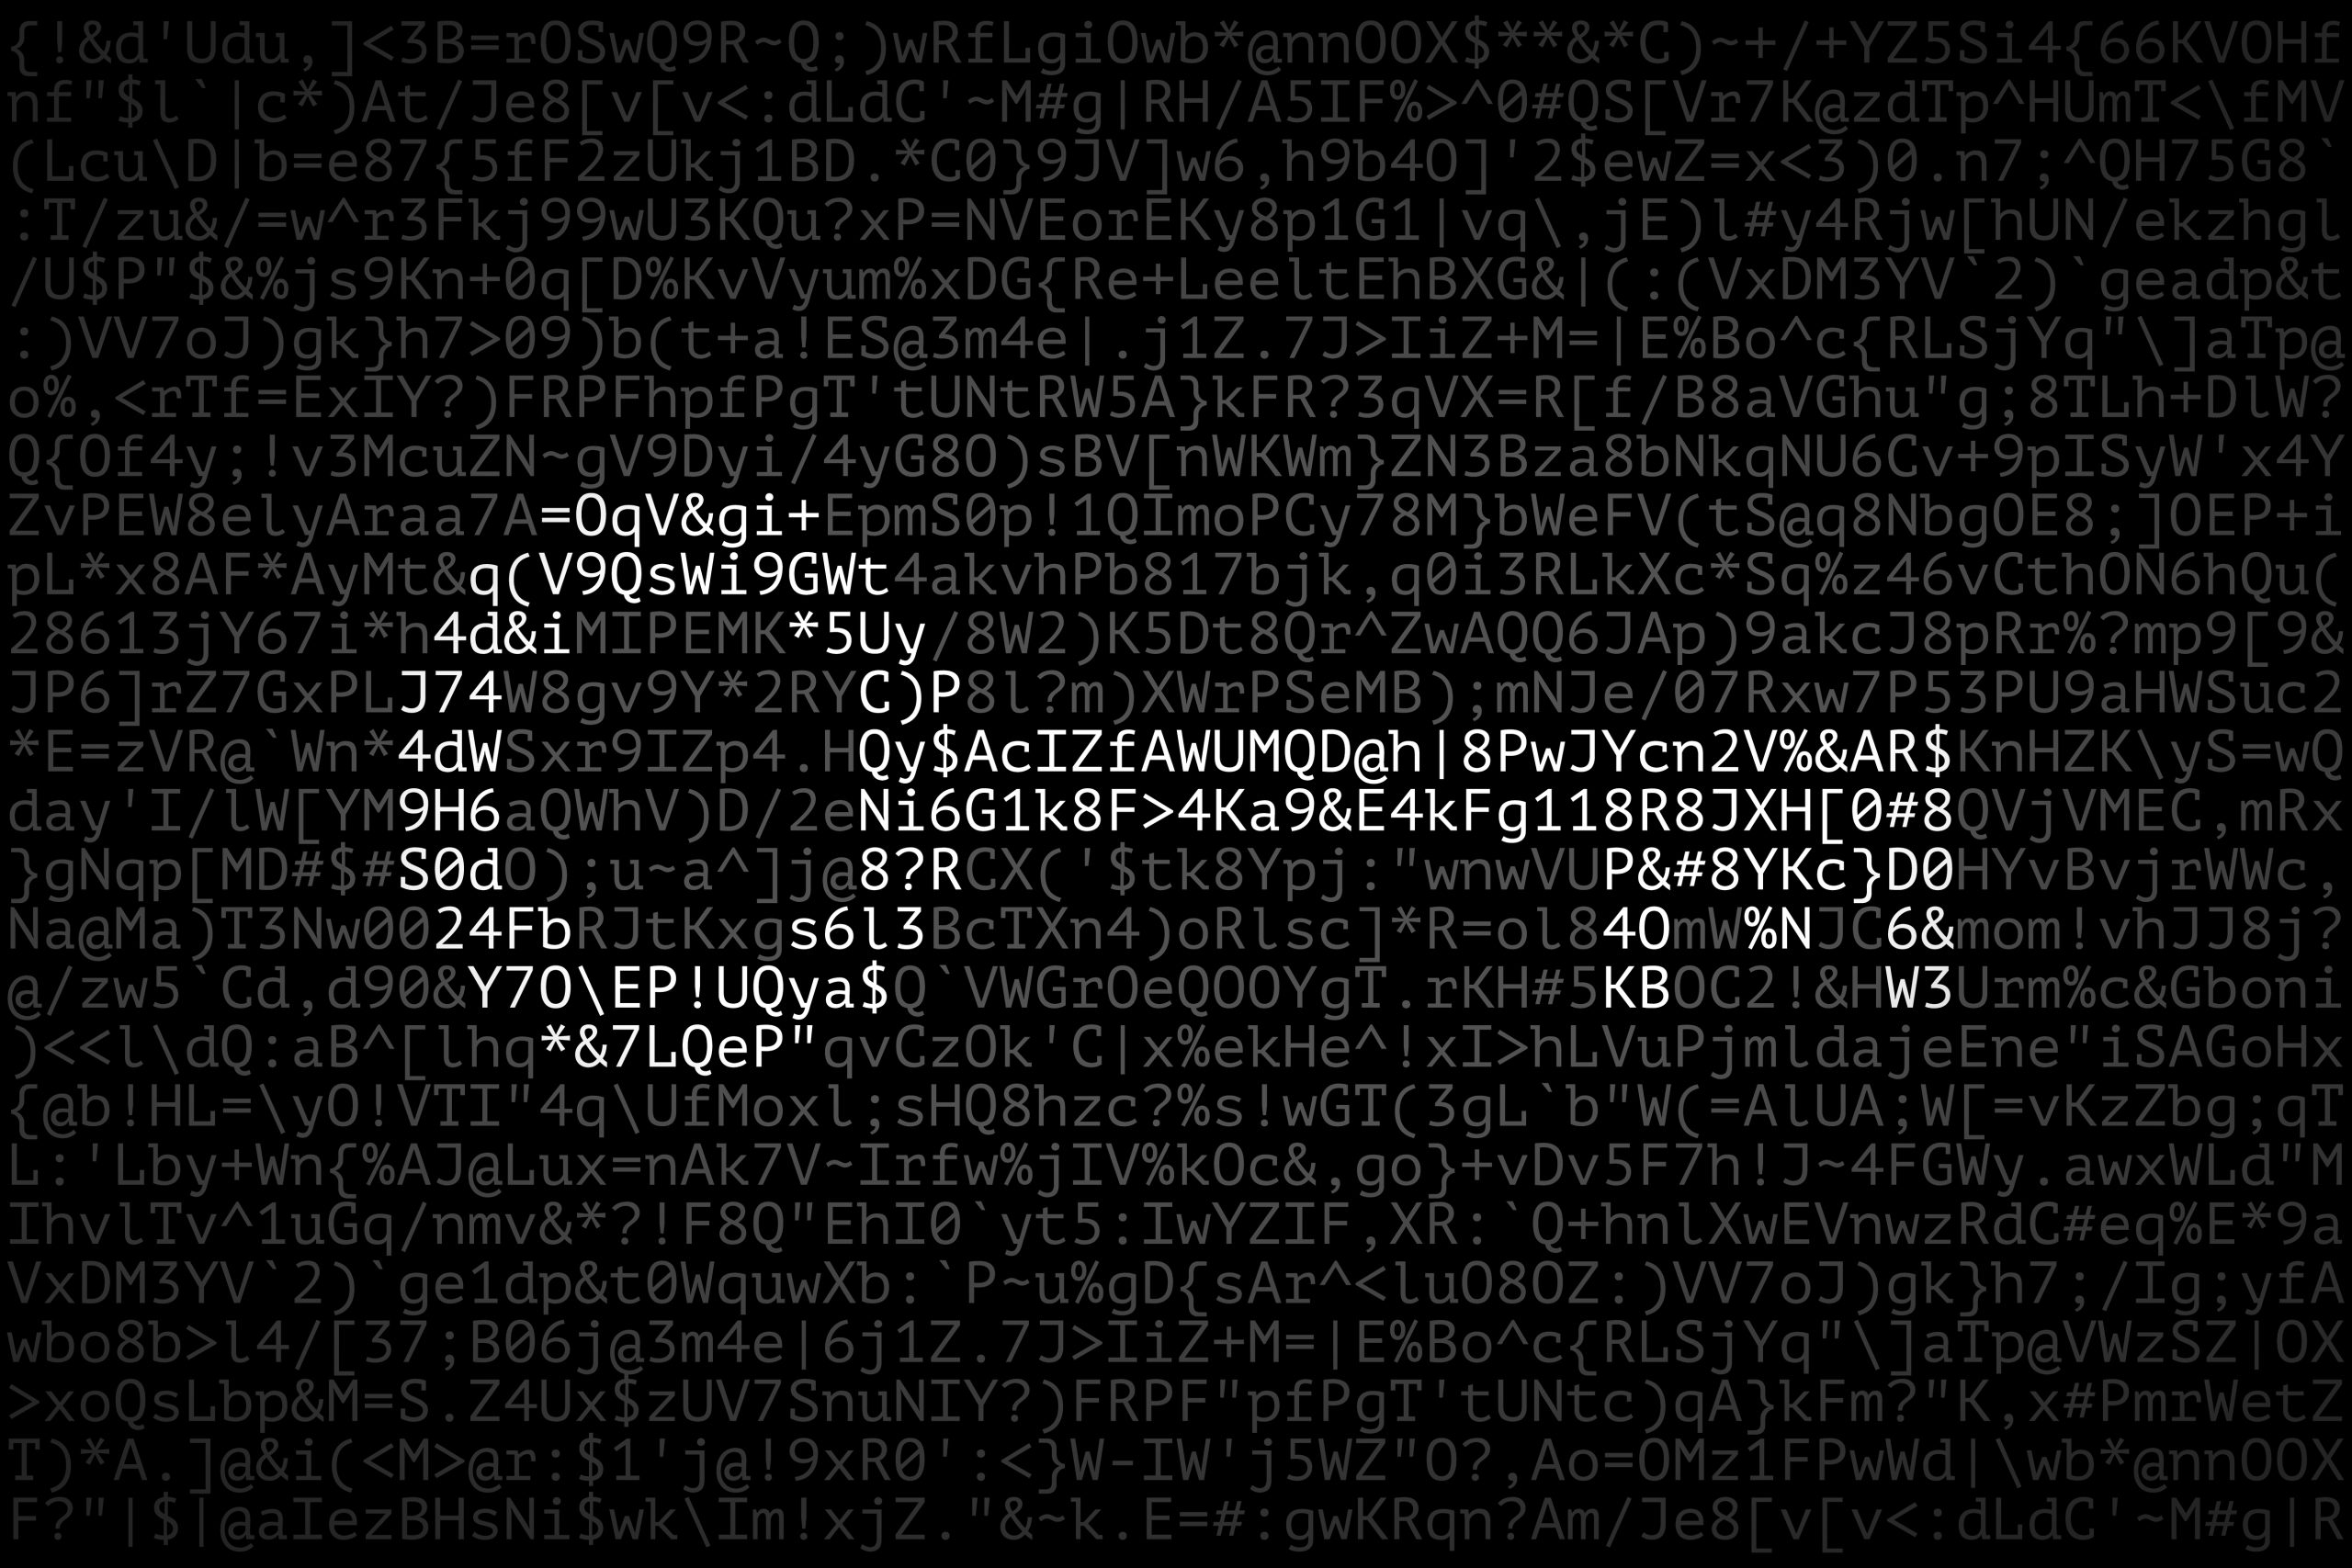 Ilustração mostra a imagem de uma chave formada por várias letras, simbolizando senhas e cibersegurança